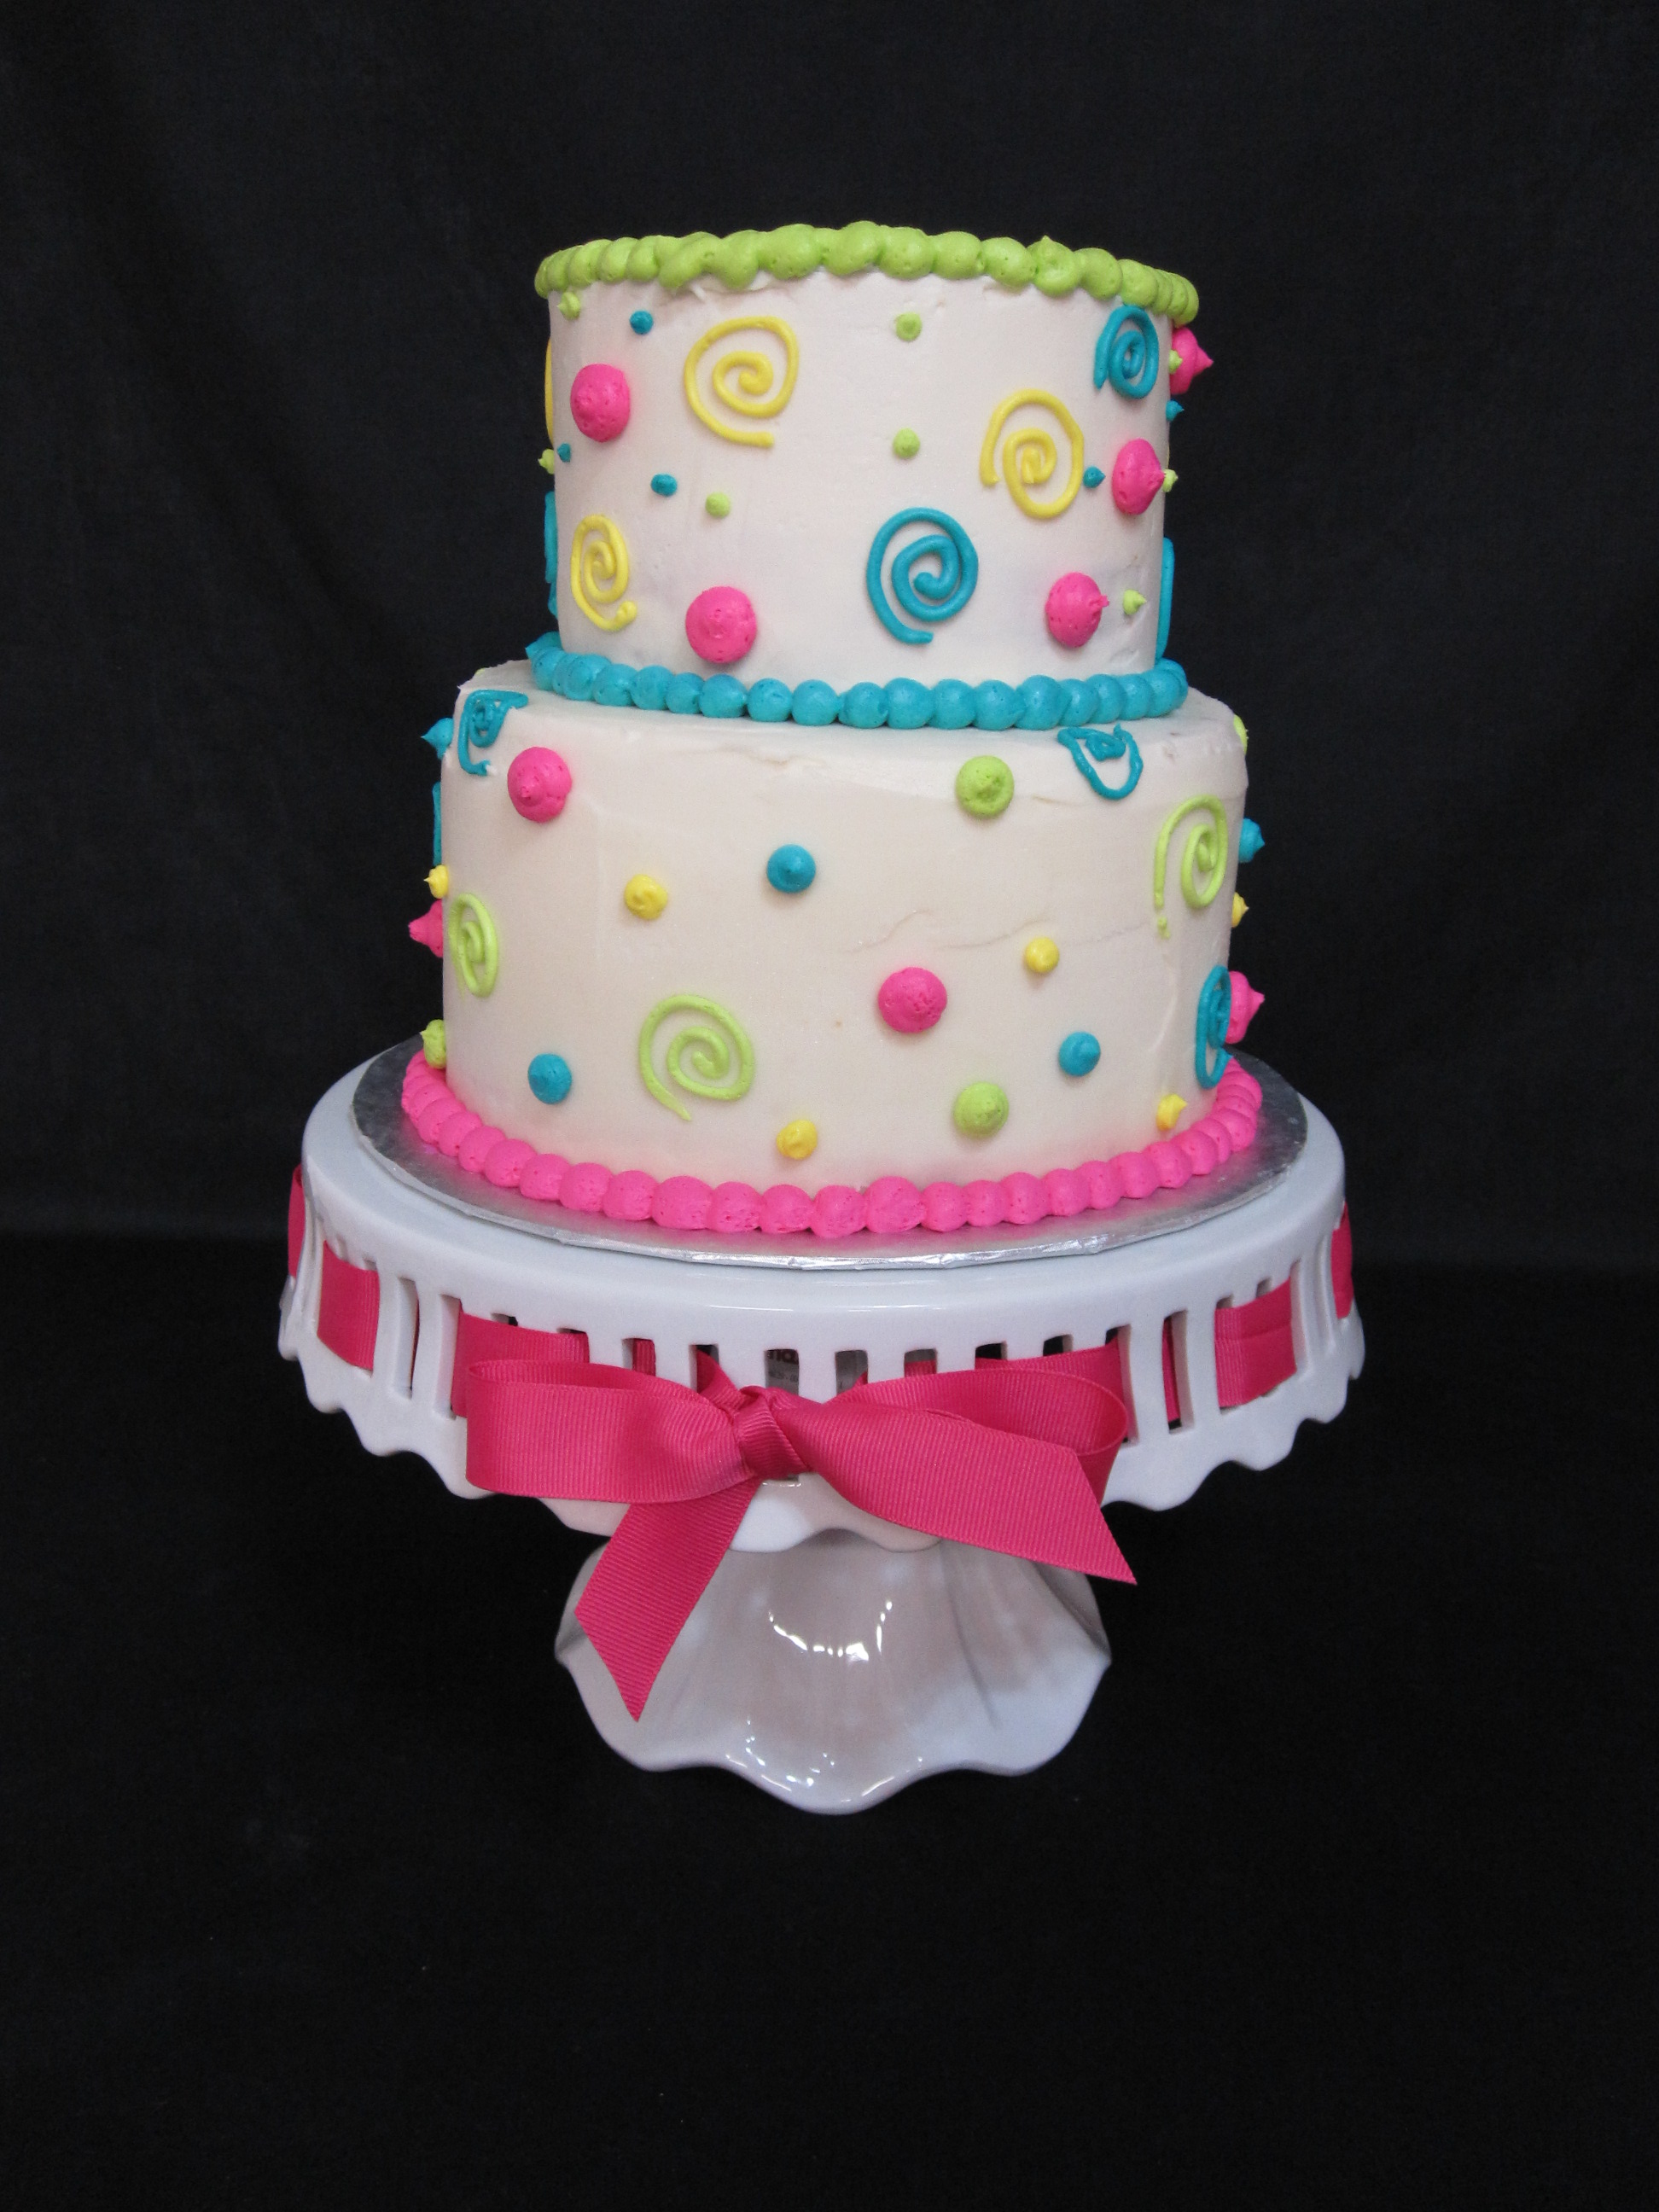 Birthday Cake Polka Dots and Swirls